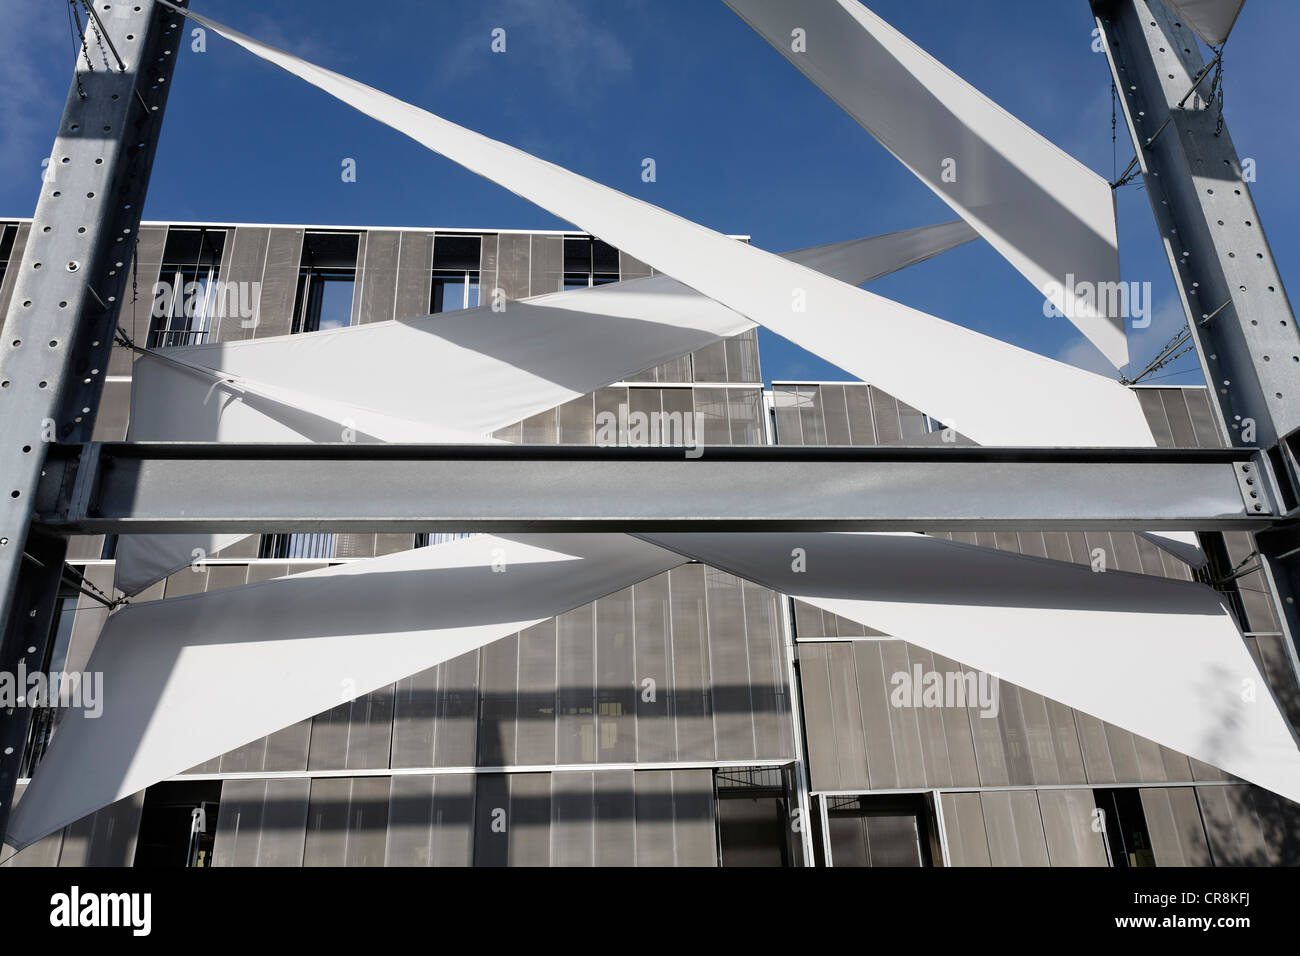 Segel Pavilion, exposition de la Faculté de Génie Civil, Bauhaus-University Weimar, Weimar, Thuringe, Allemagne, Europe Banque D'Images